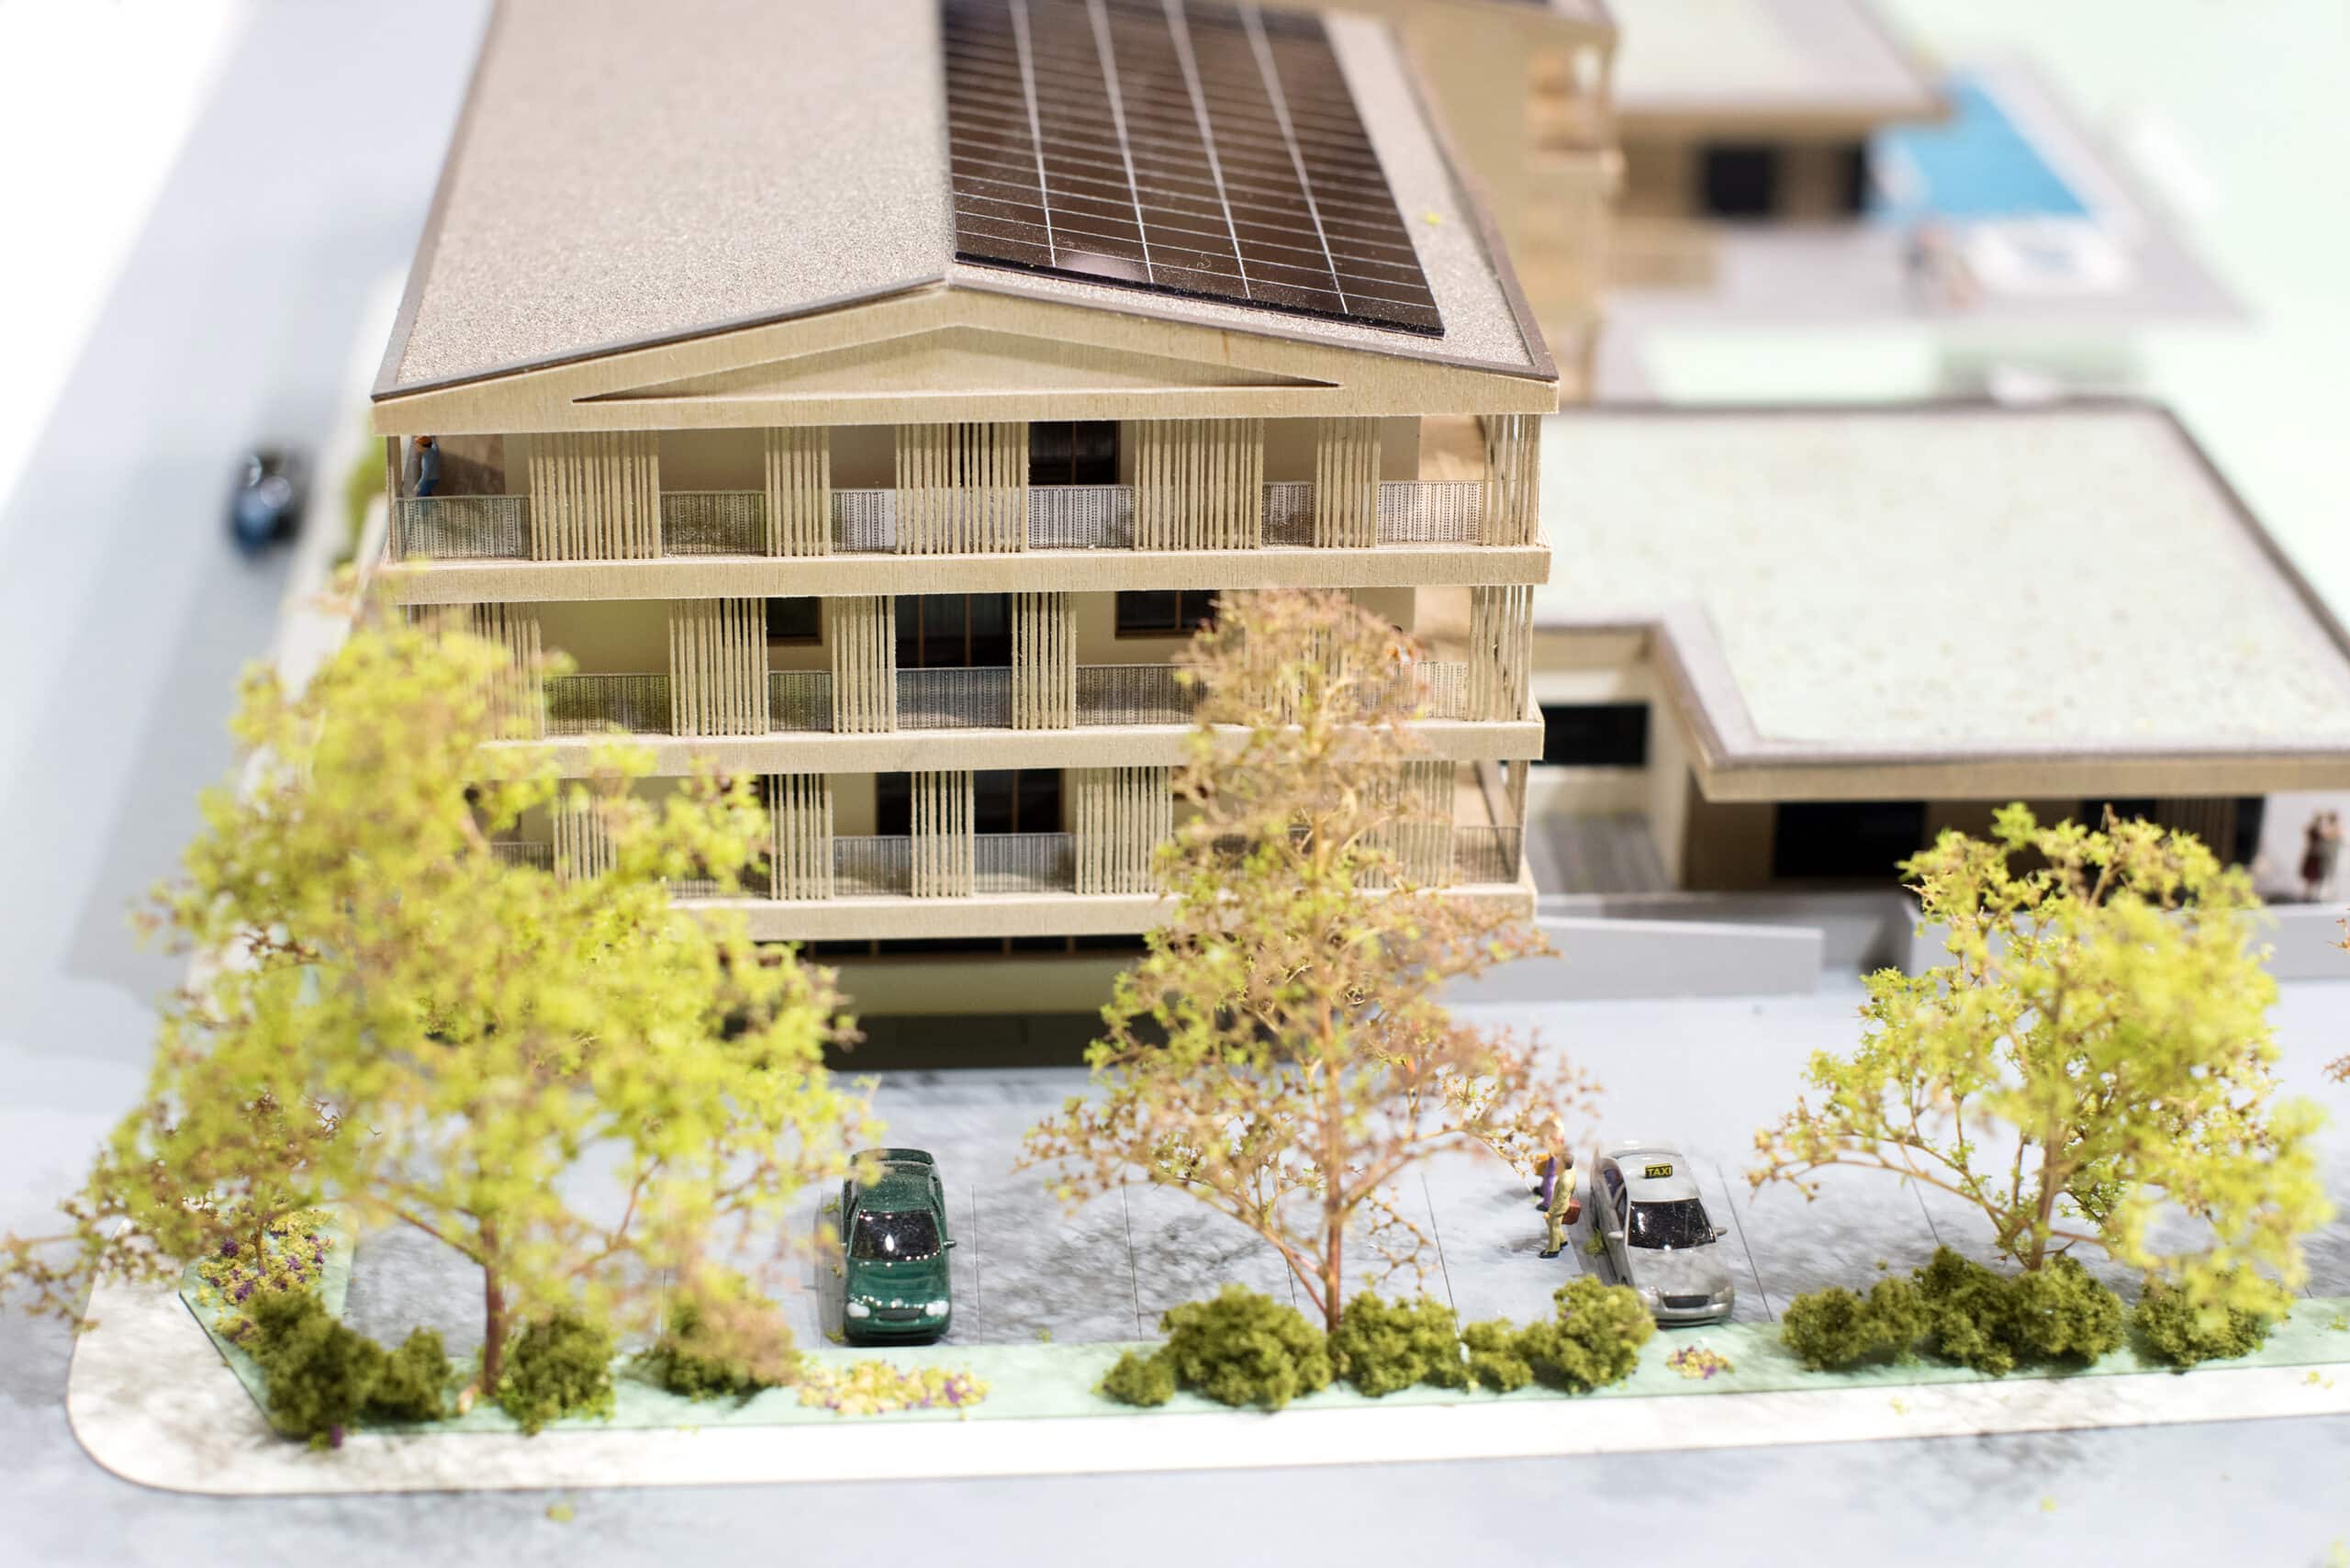 Wereldprimeur: eerste volwaardige 3D-geprinte huis is opgeleverd in Westerlo